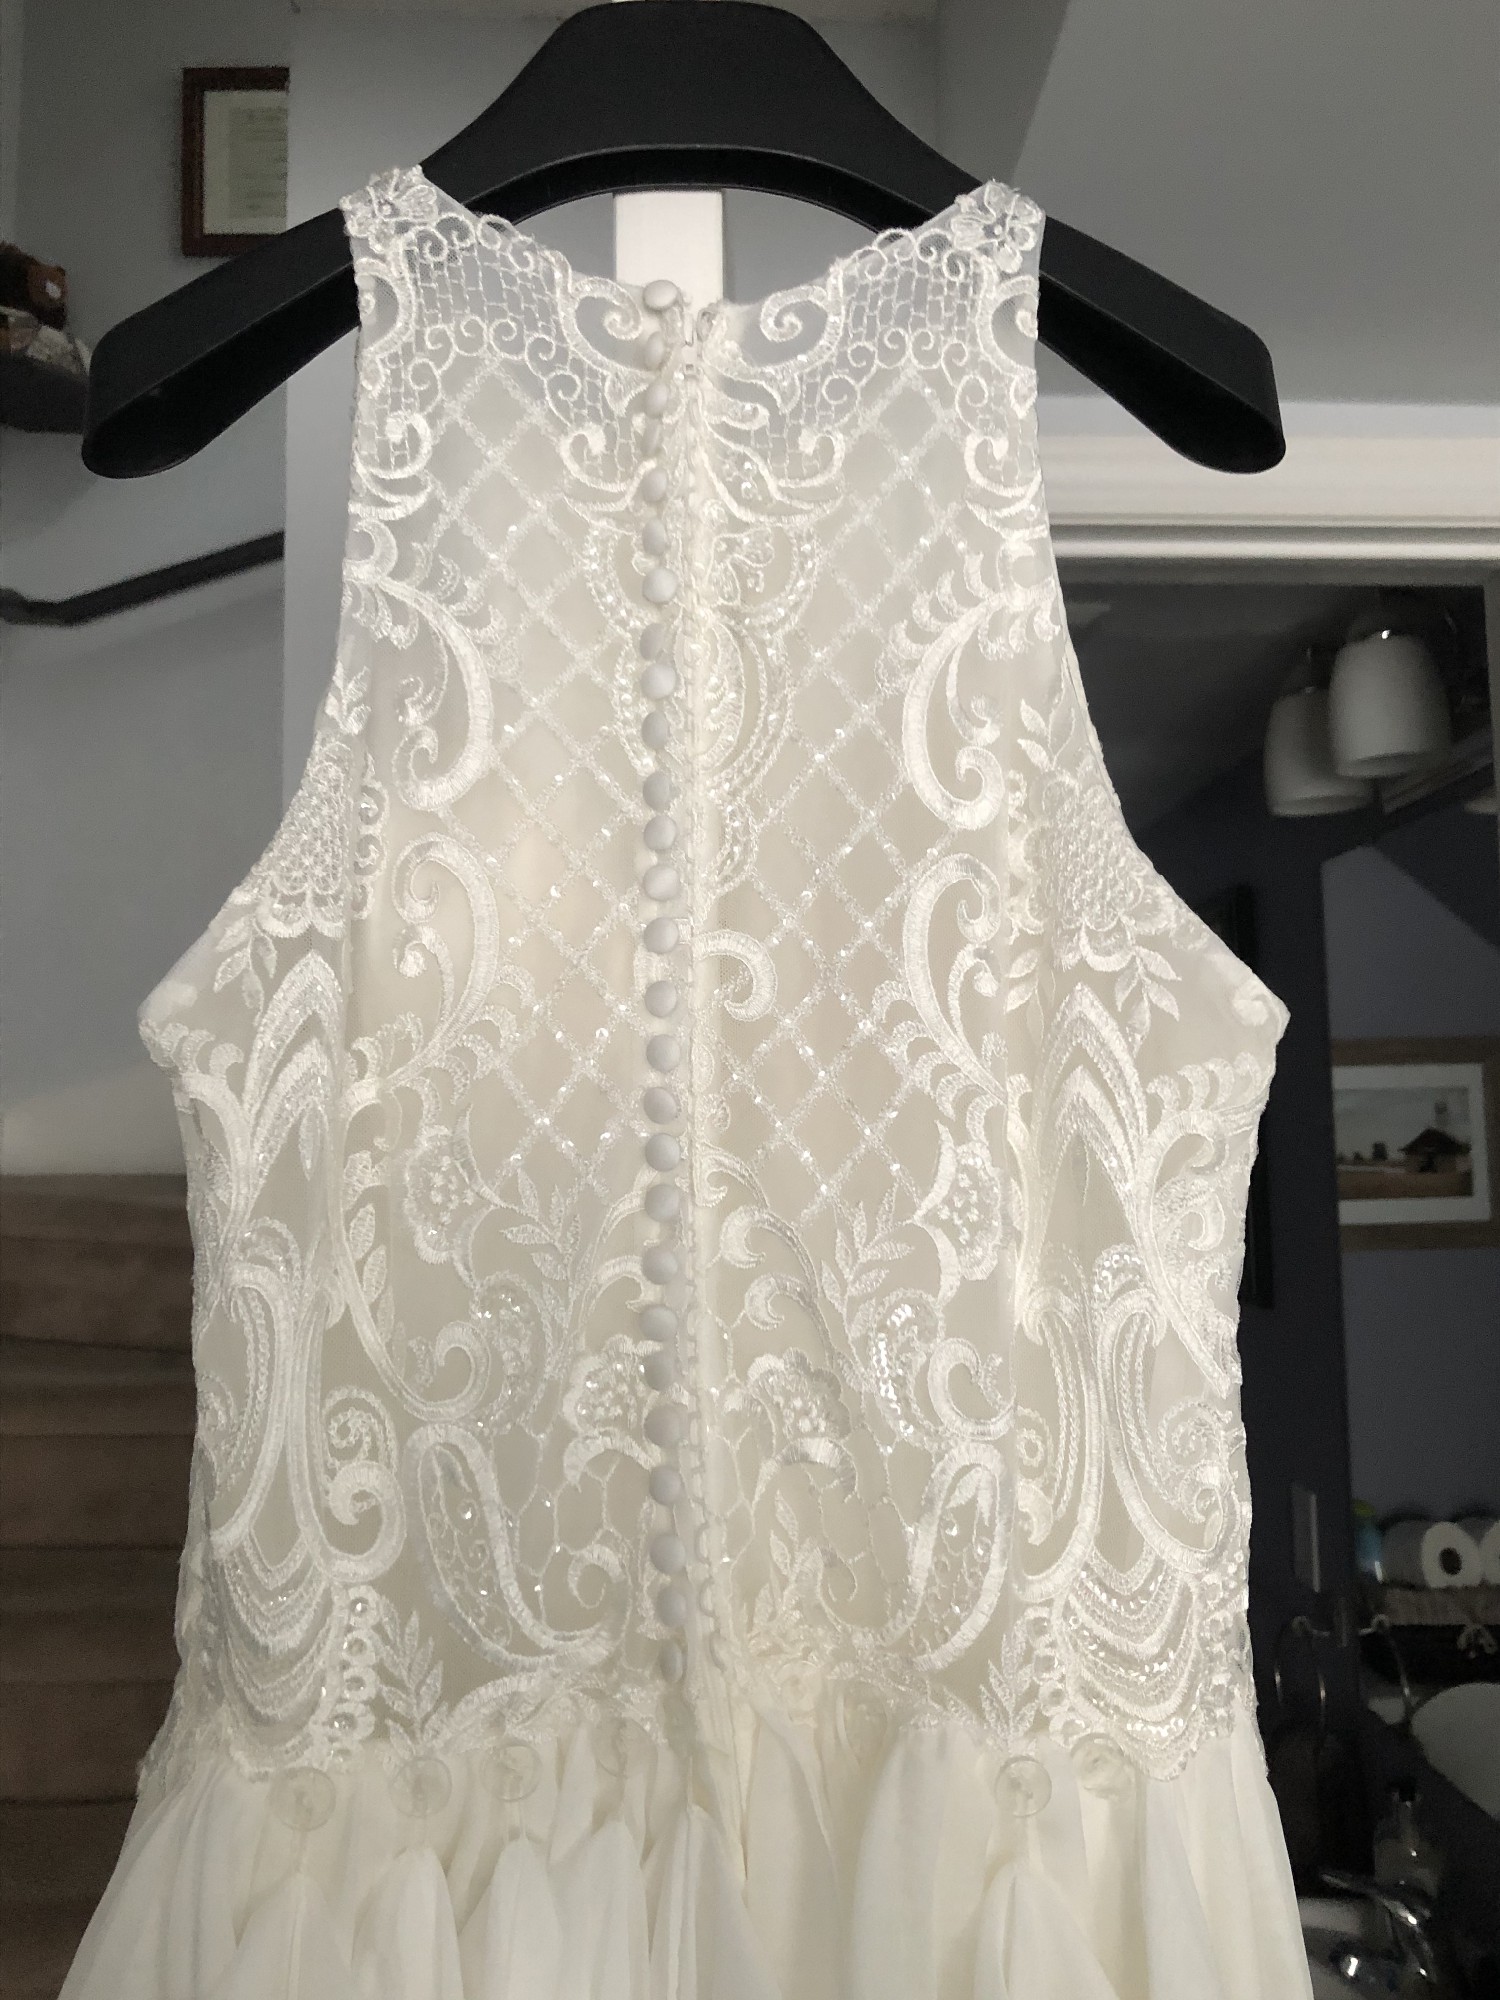 Lis Simon Kenzie Preowned Wedding Dress Save 50% - Stillwhite